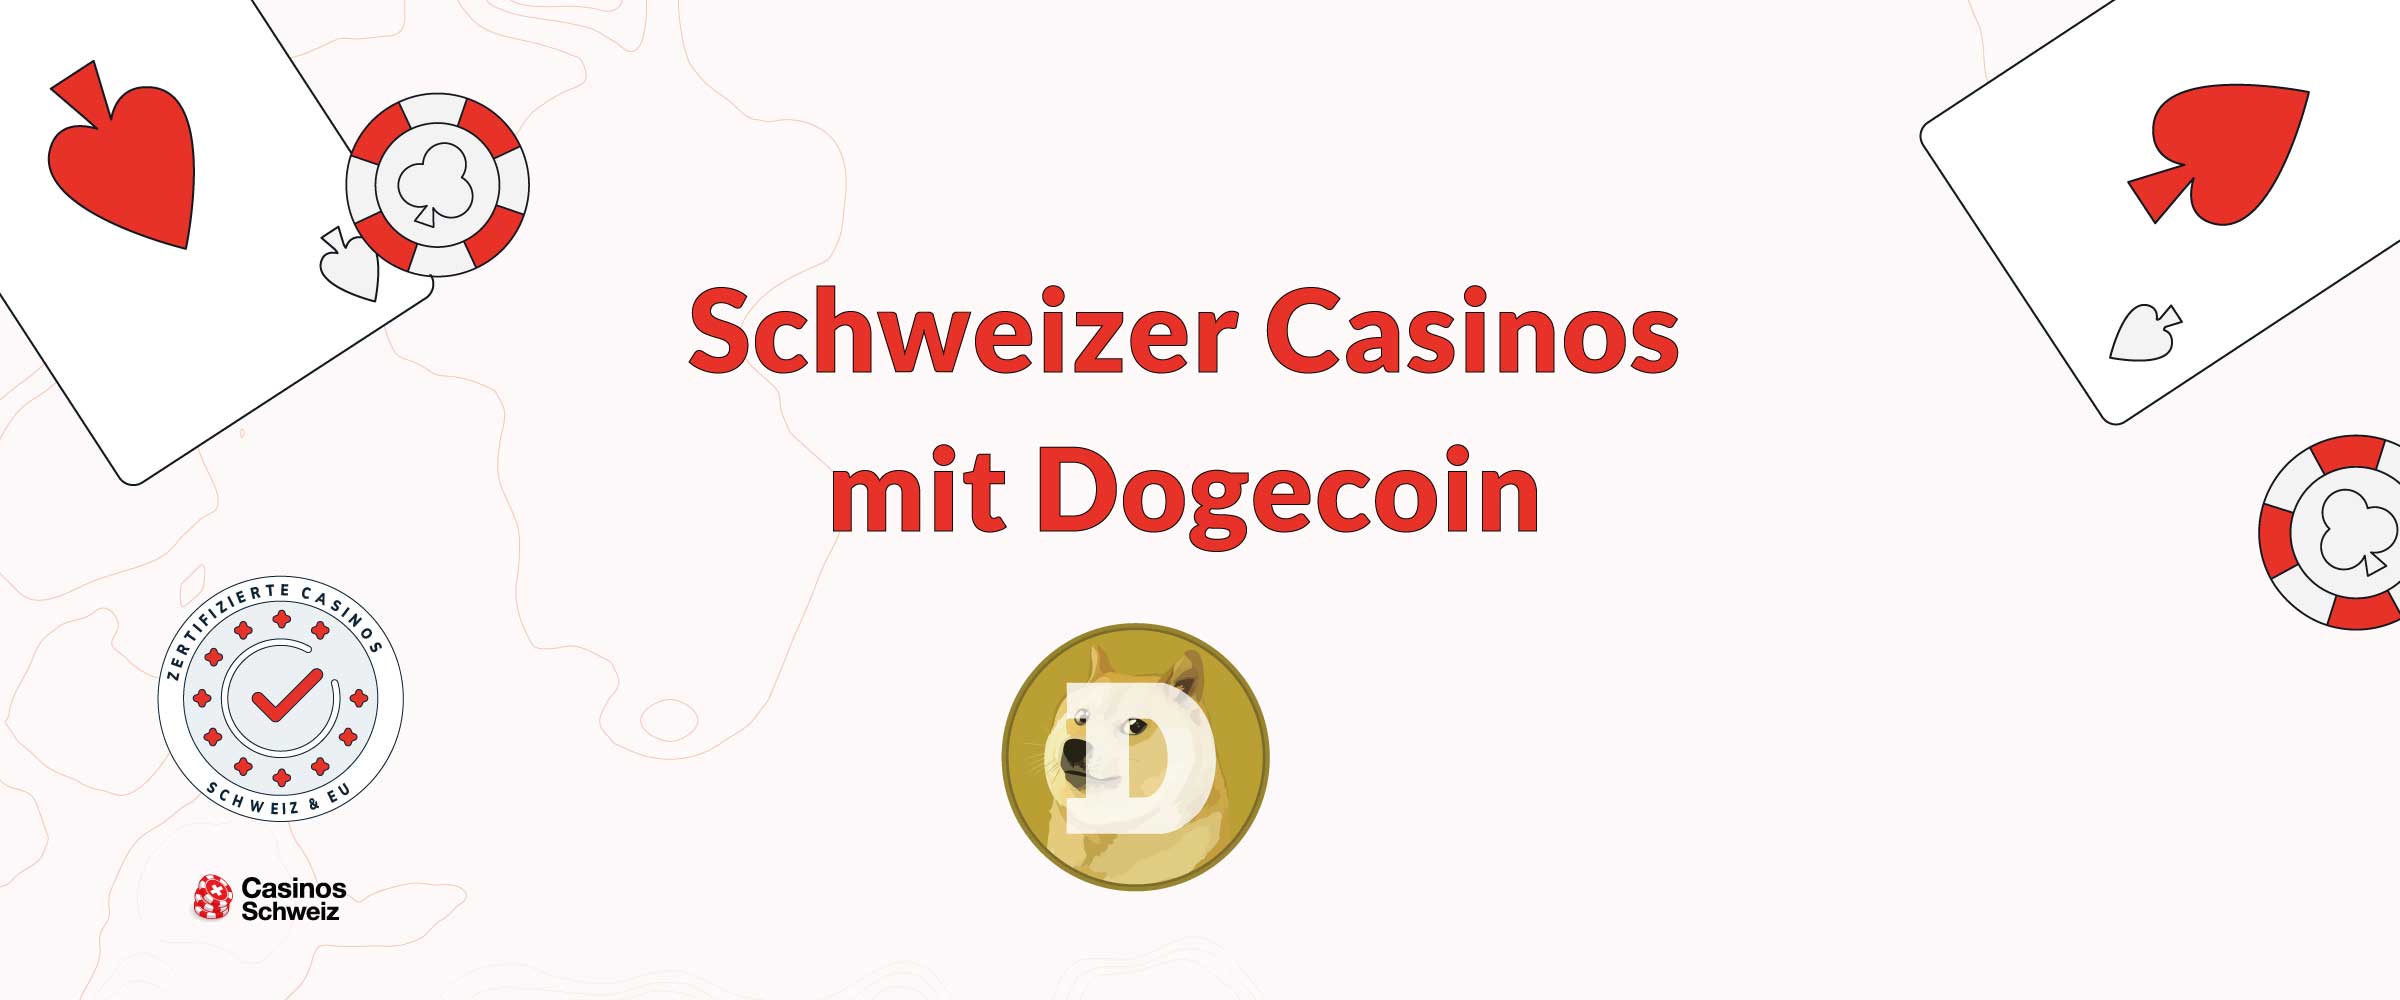 Seriöse Casinos Schweiz mit Dogecoin